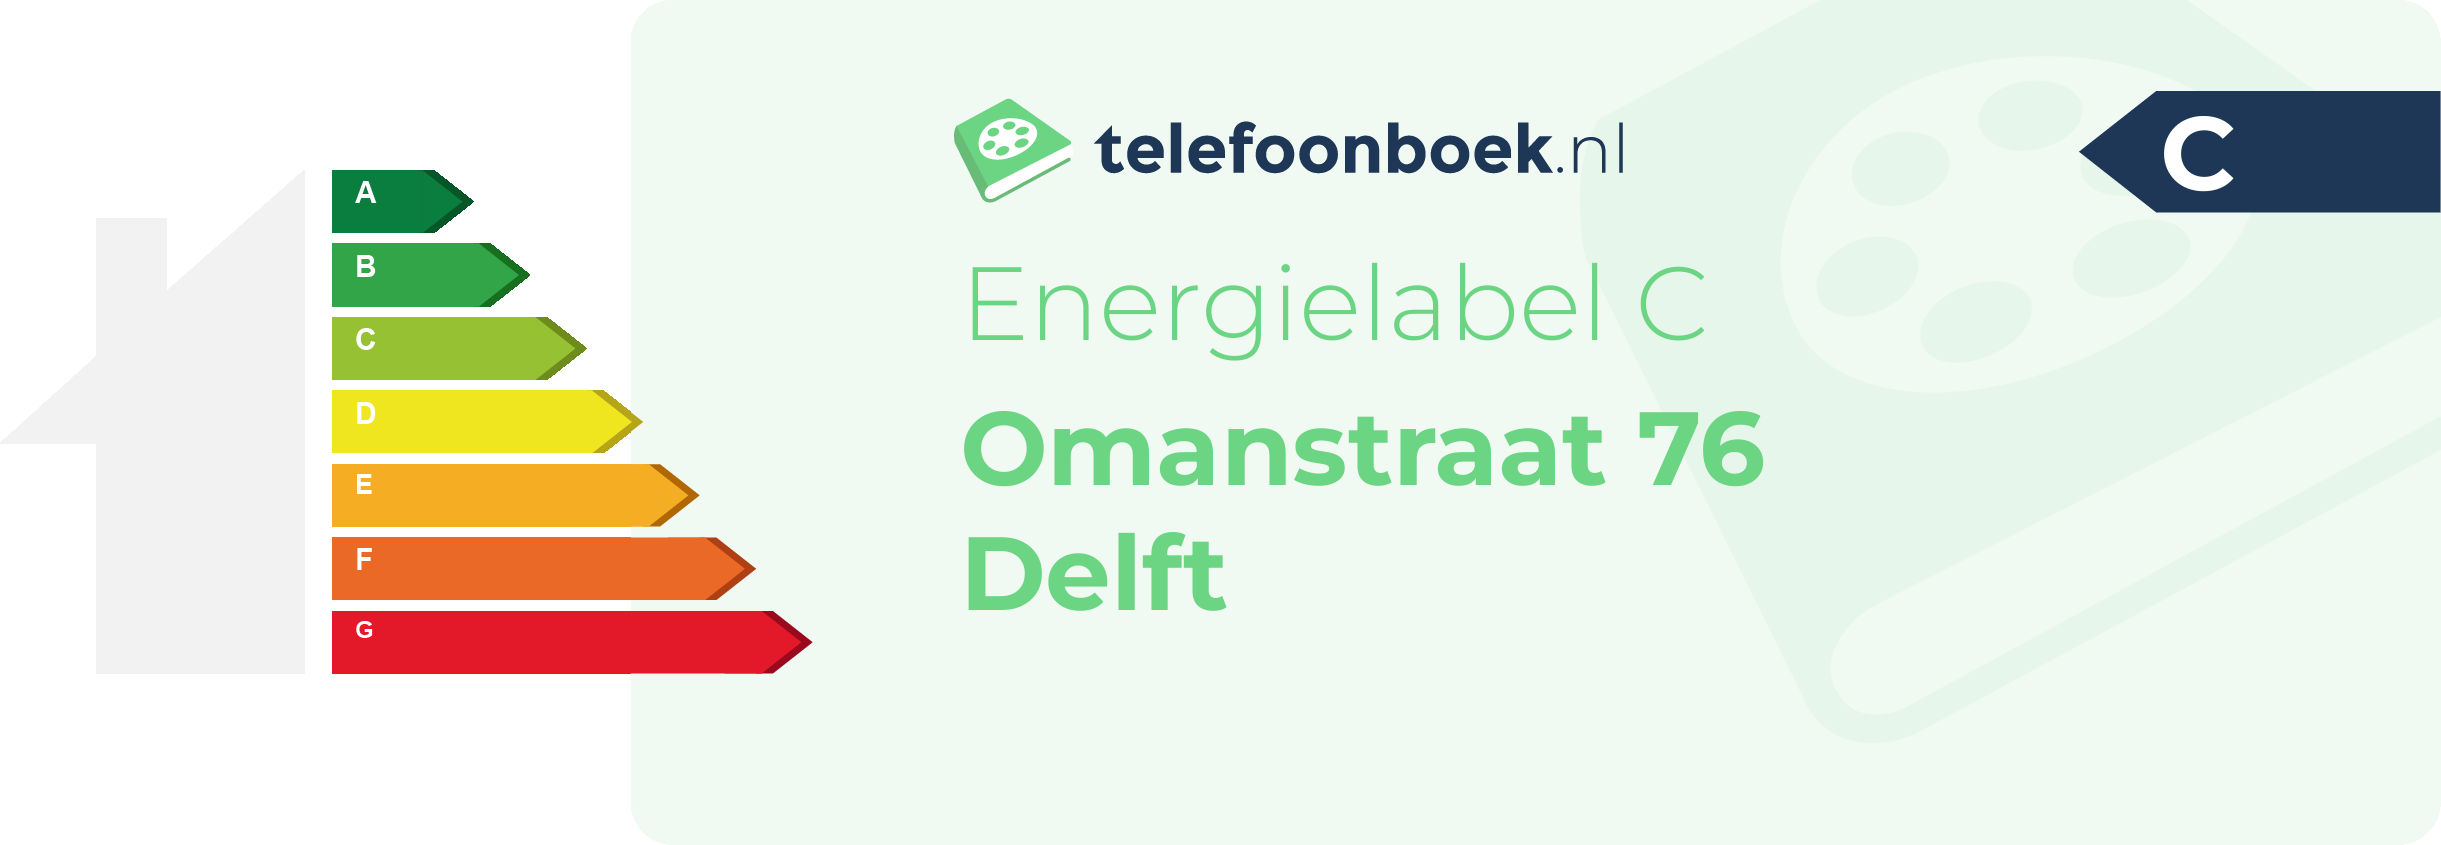 Energielabel Omanstraat 76 Delft